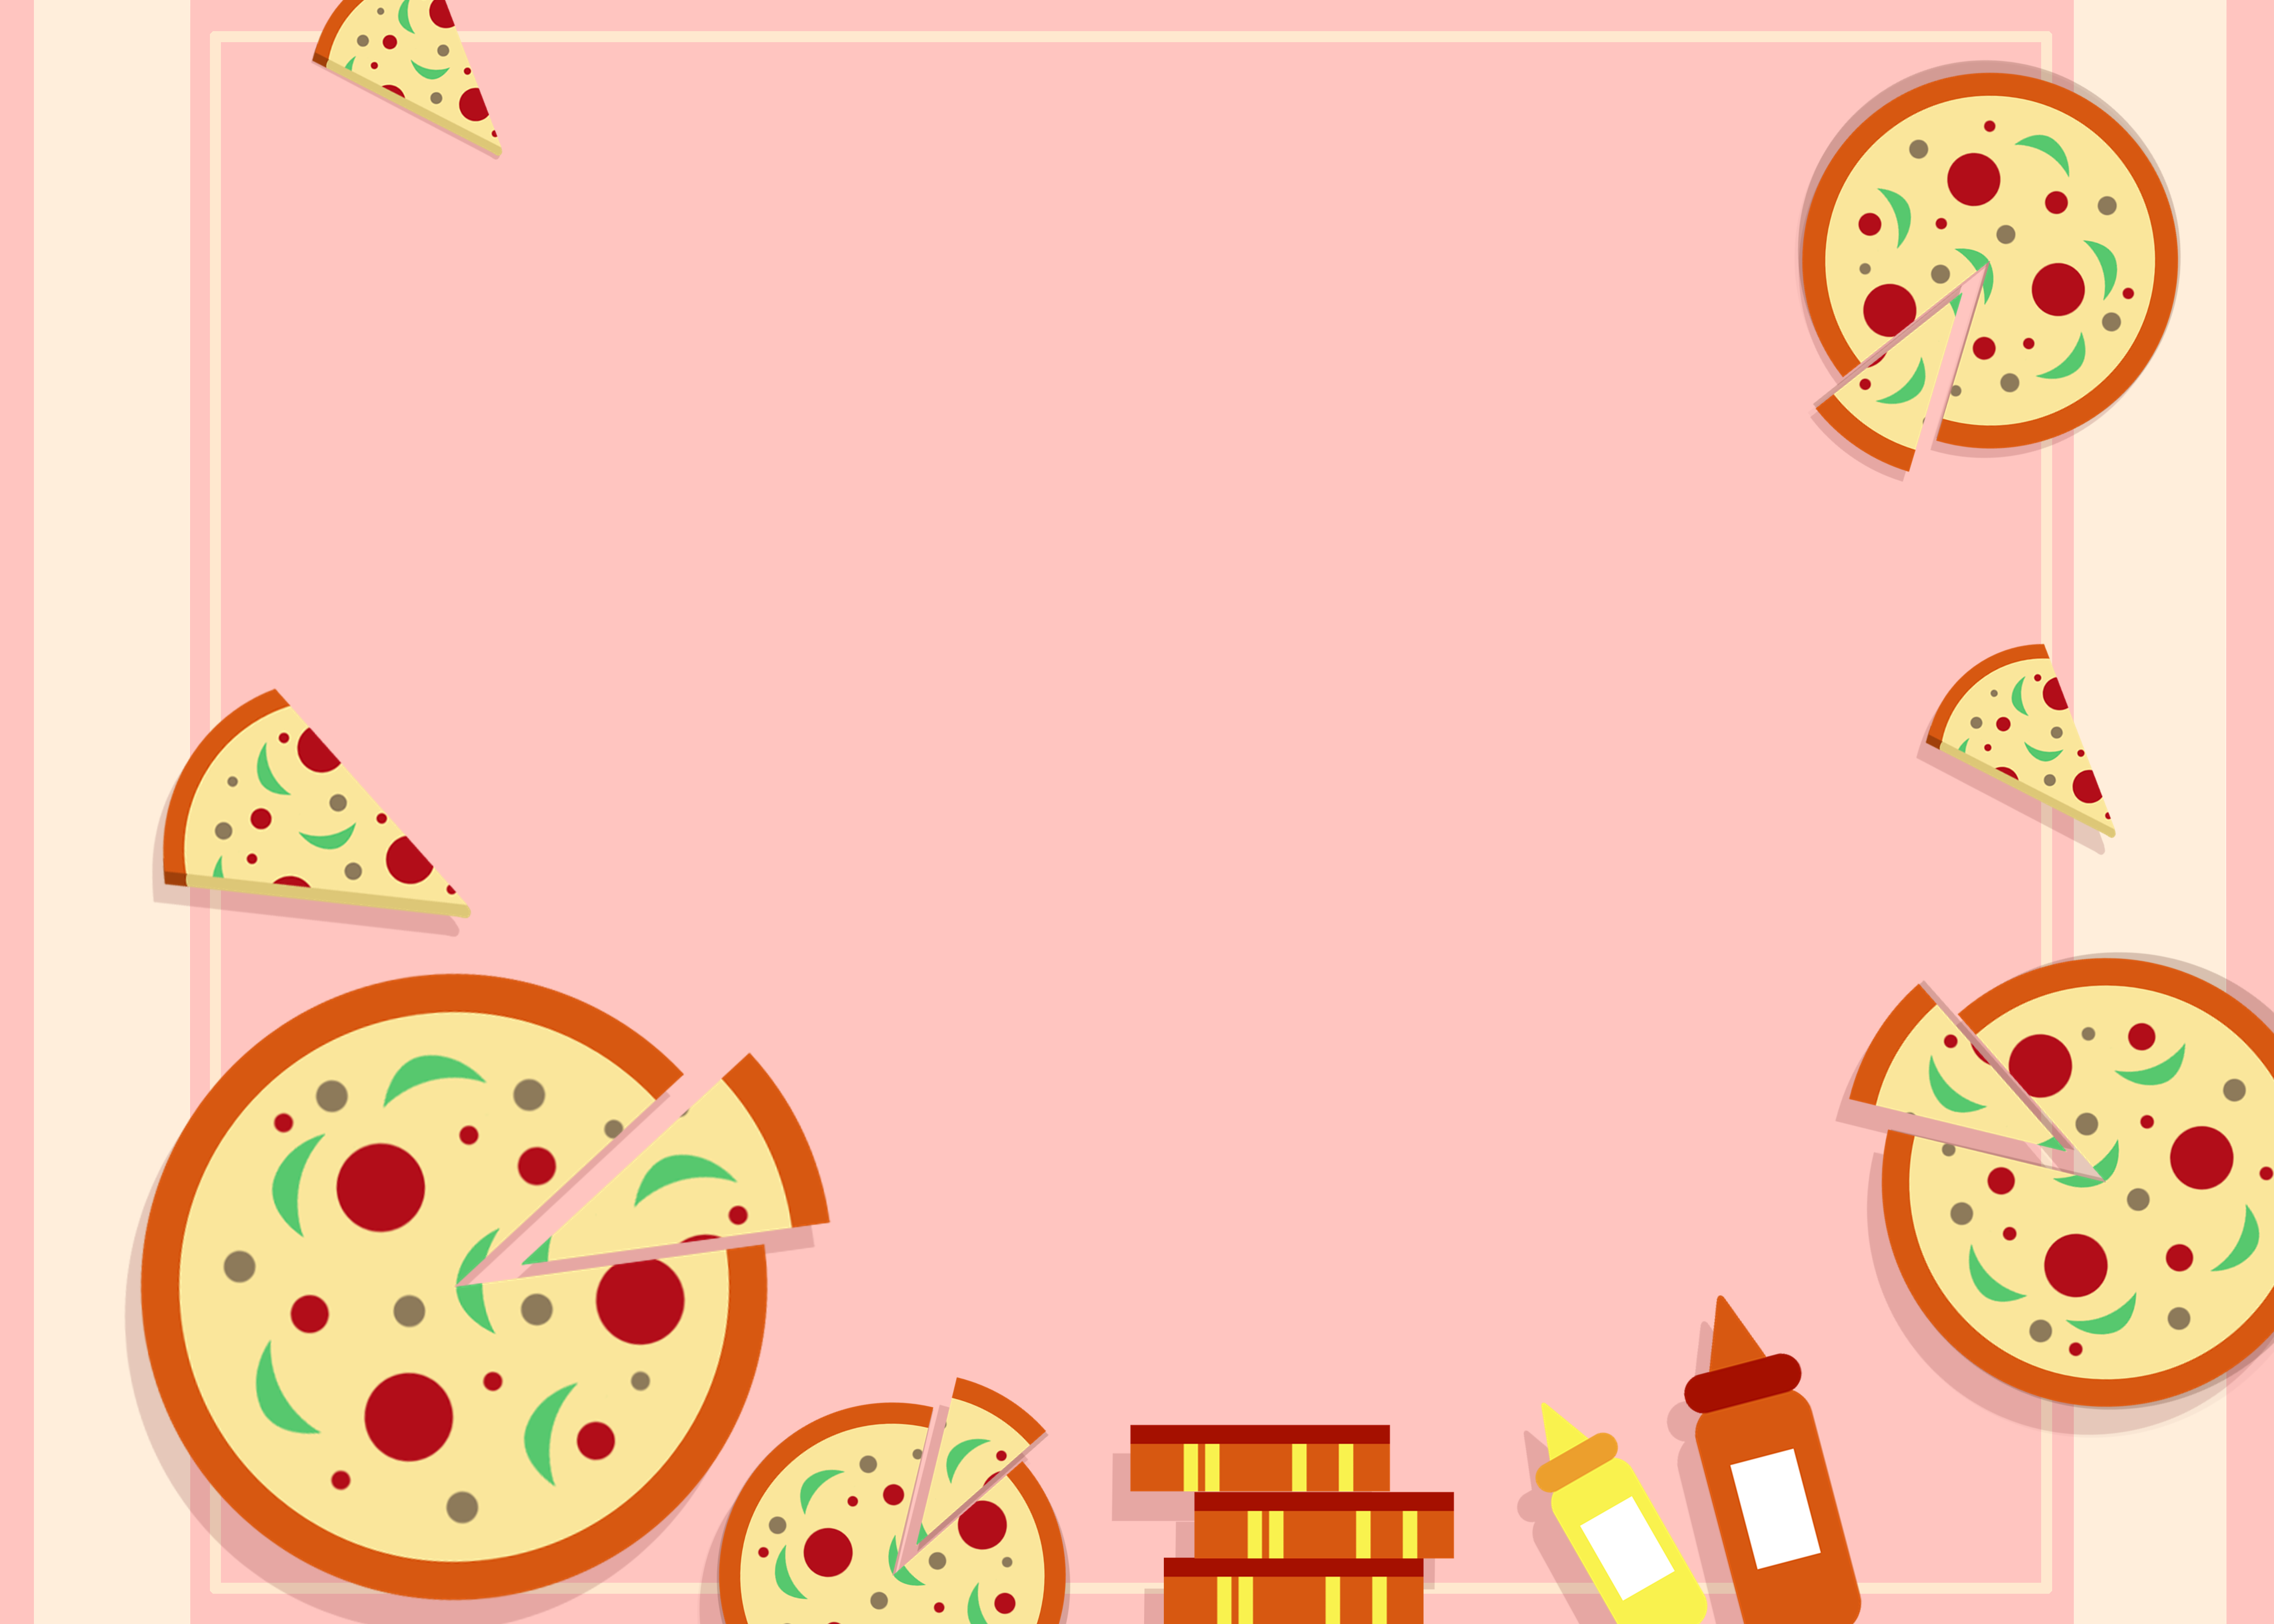 美味披萨图片下载 - 觅知网